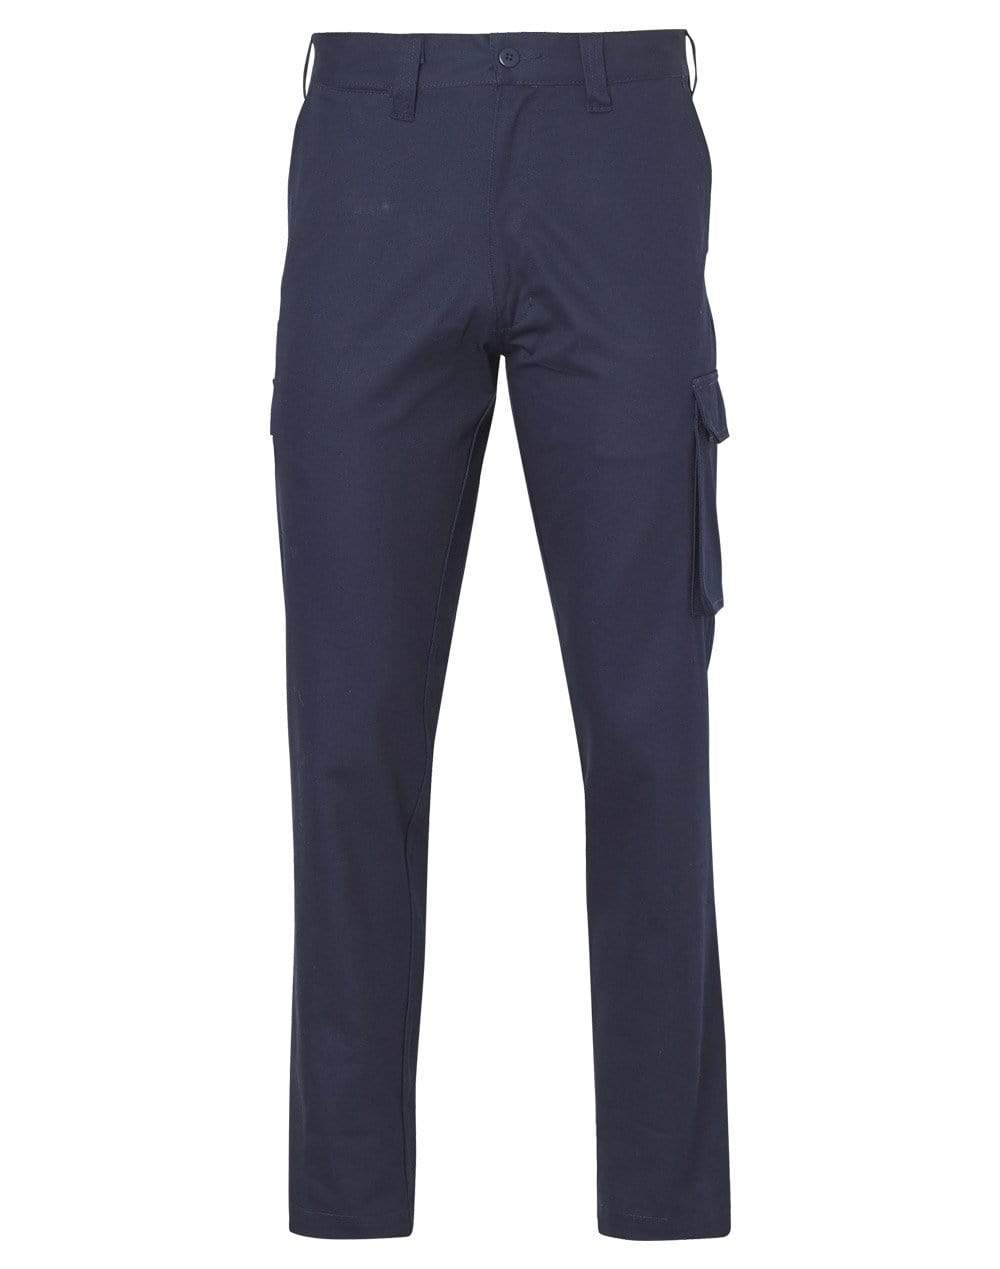 Australian Industrial Wear Work Wear Navy / 77R Men'sHEAVY COTTON PRE-SHRUNK DRILL PANTS Regular Size WP07